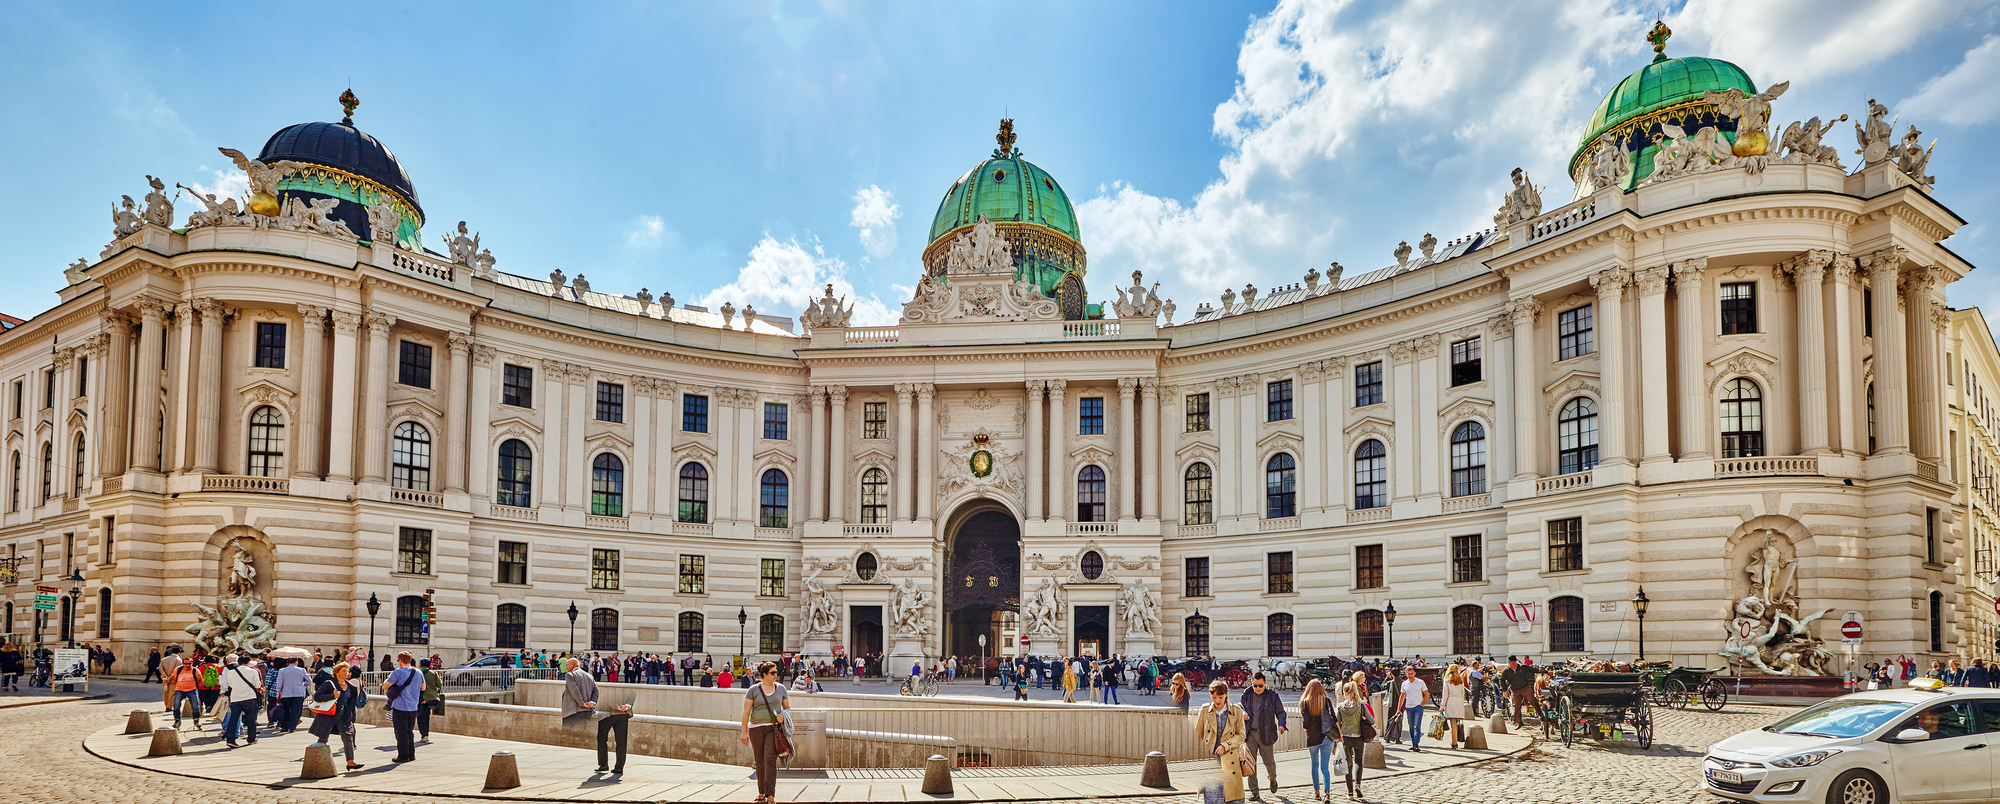 Hofburg Palace Vienna Austria